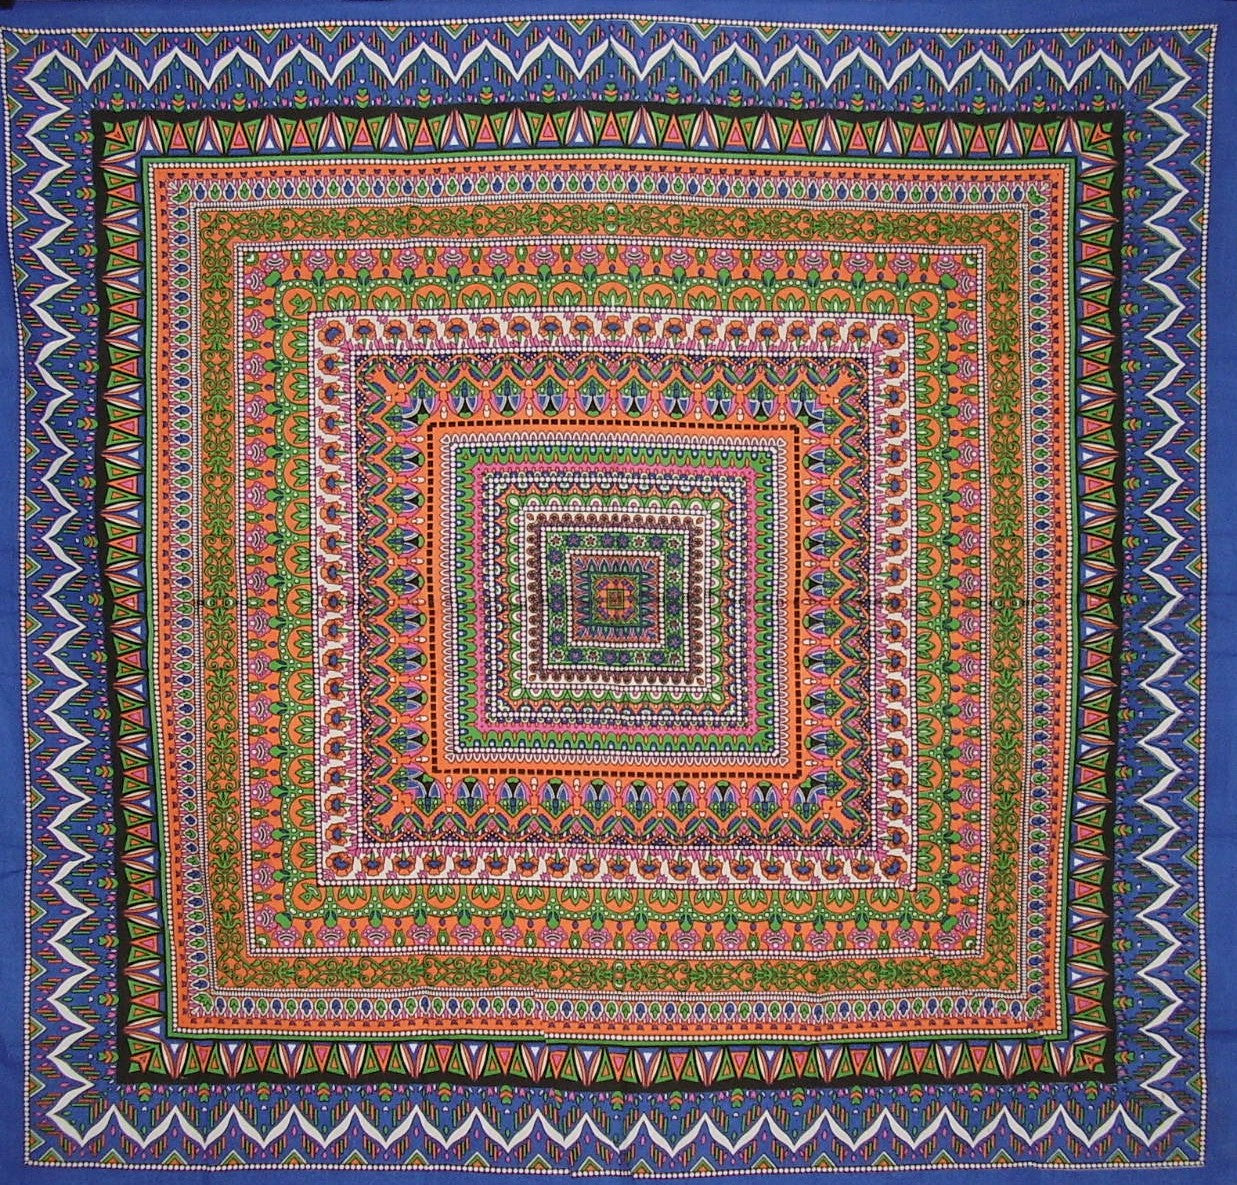 Toalha de mesa quadrada de algodão com padrão geométrico 70" x 70" multi cor